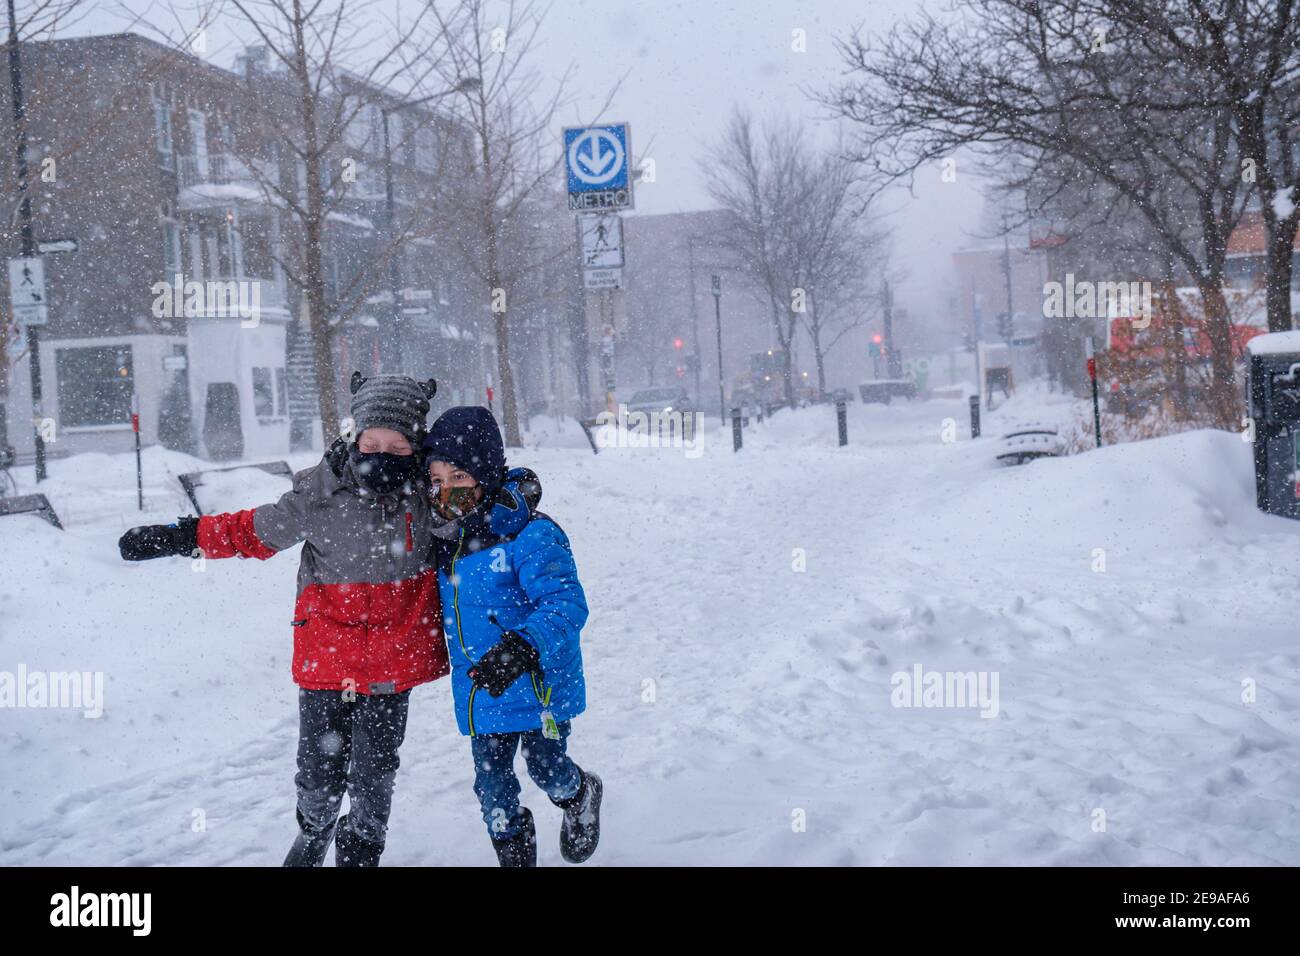 Montréal, CA - 2 février 2021 : deux enfants souriants s'amusent pendant la tempête de neige Banque D'Images